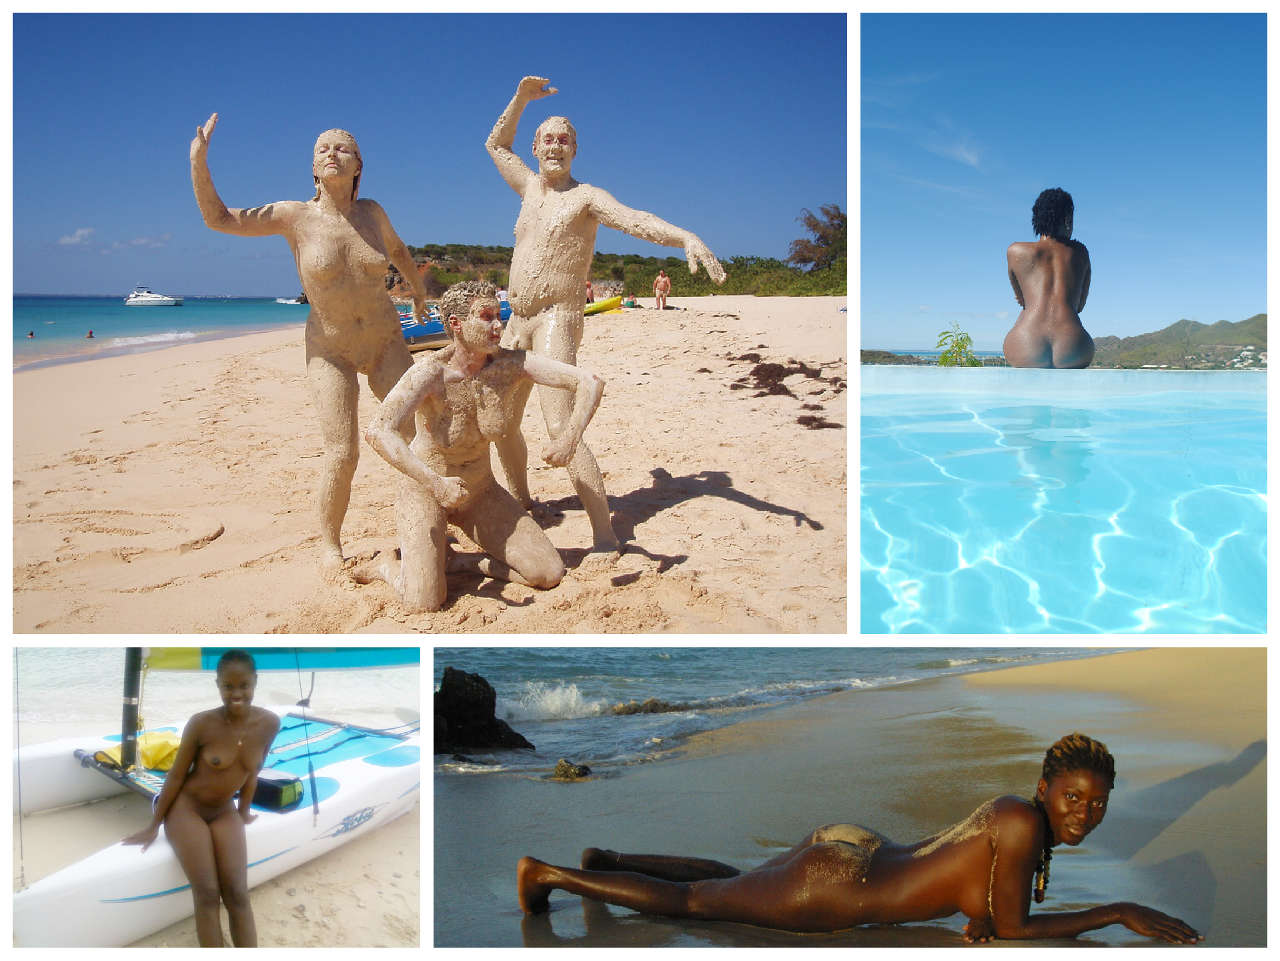 carlton rodrigues add naked at a beach photo